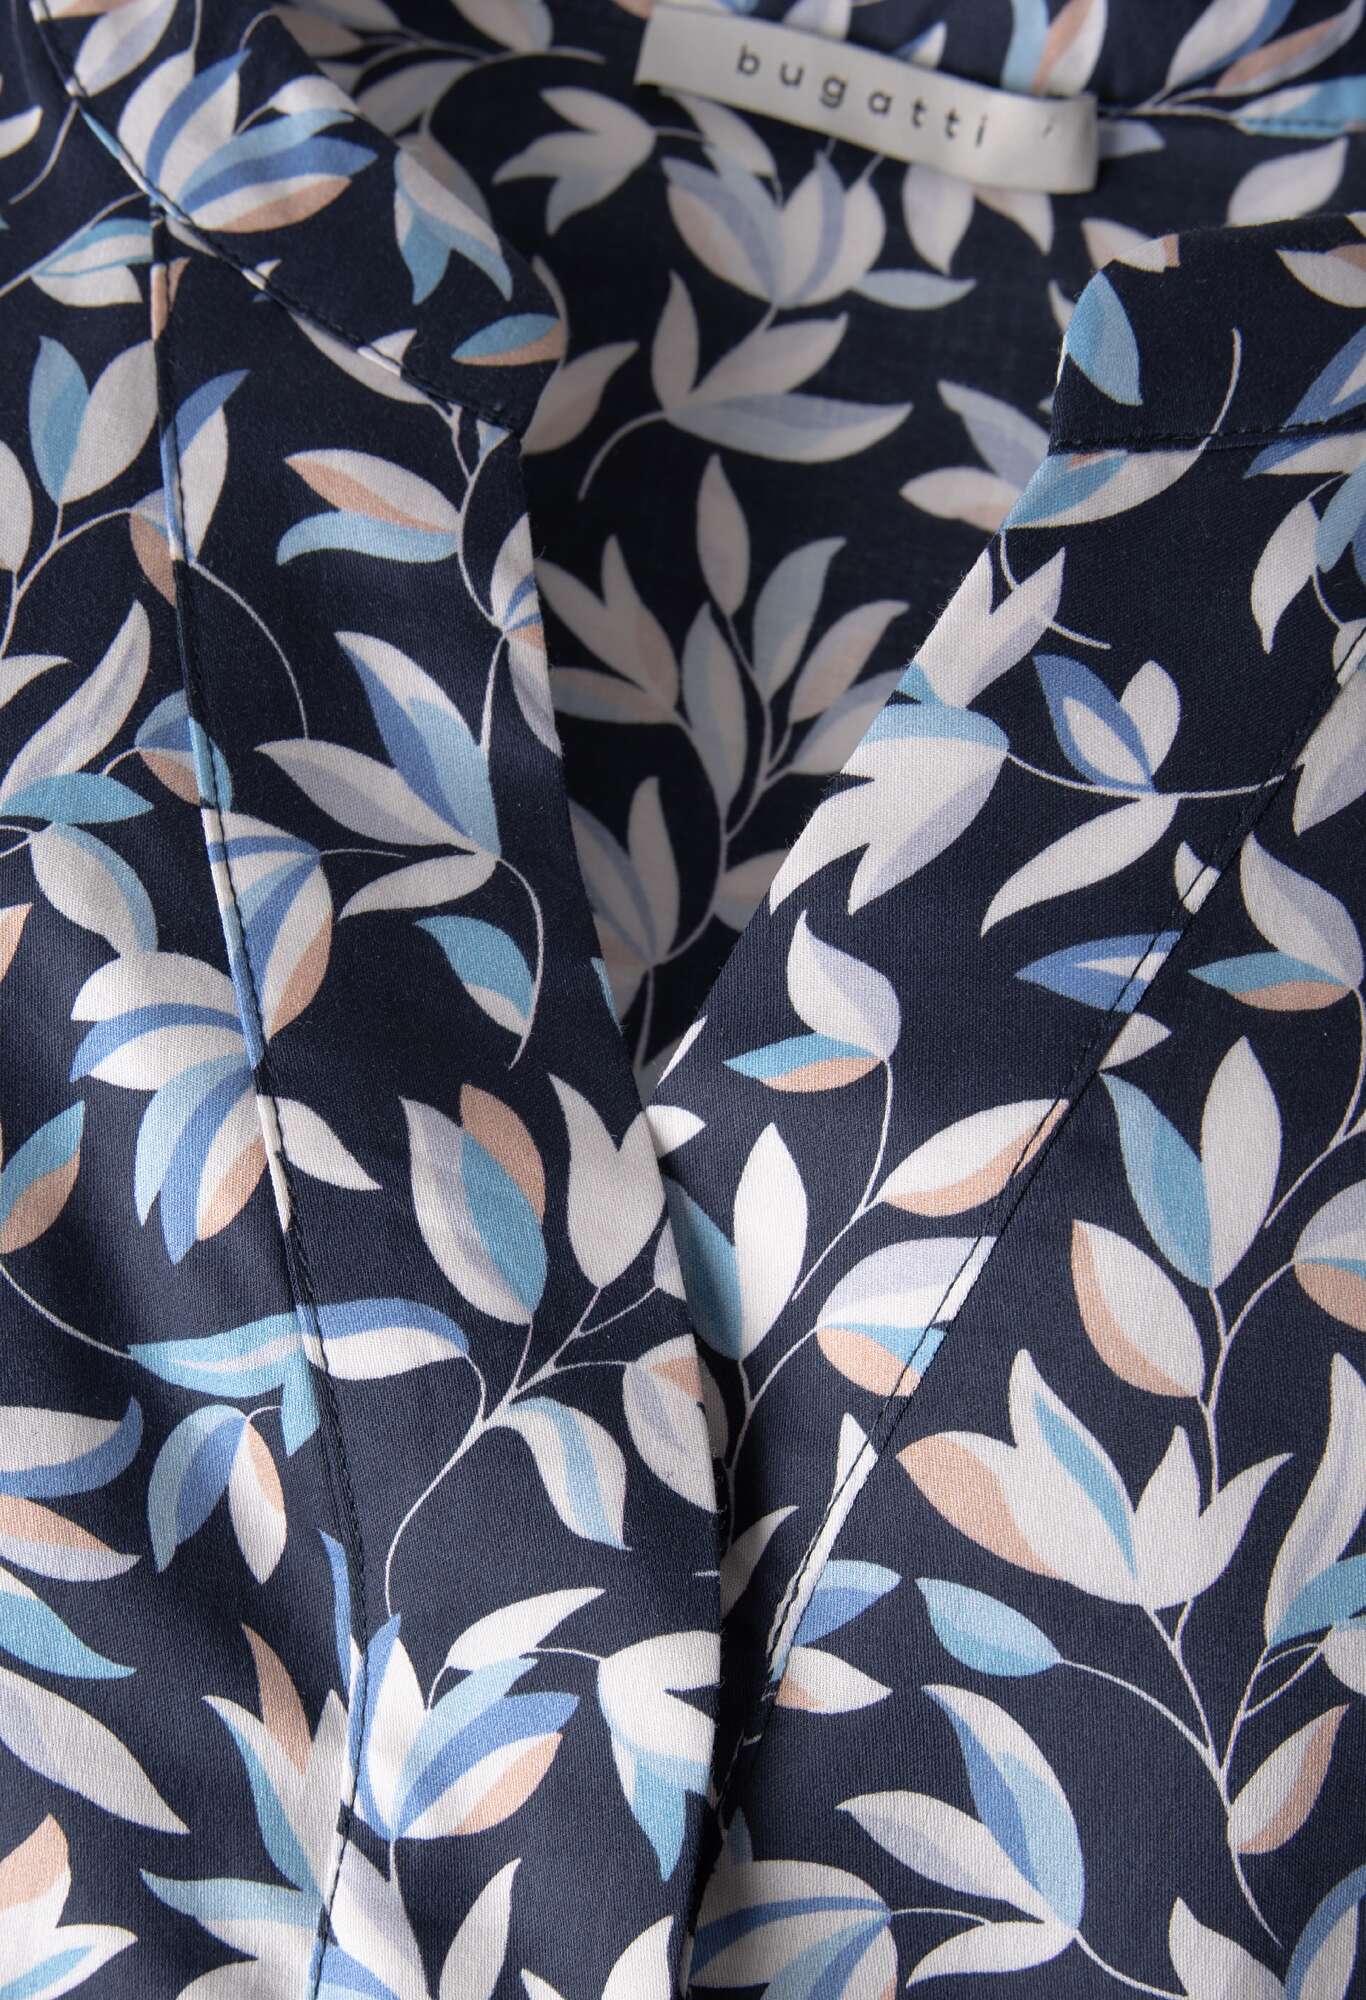 Blusenkleid mit bugatti marine in floralem Muster 